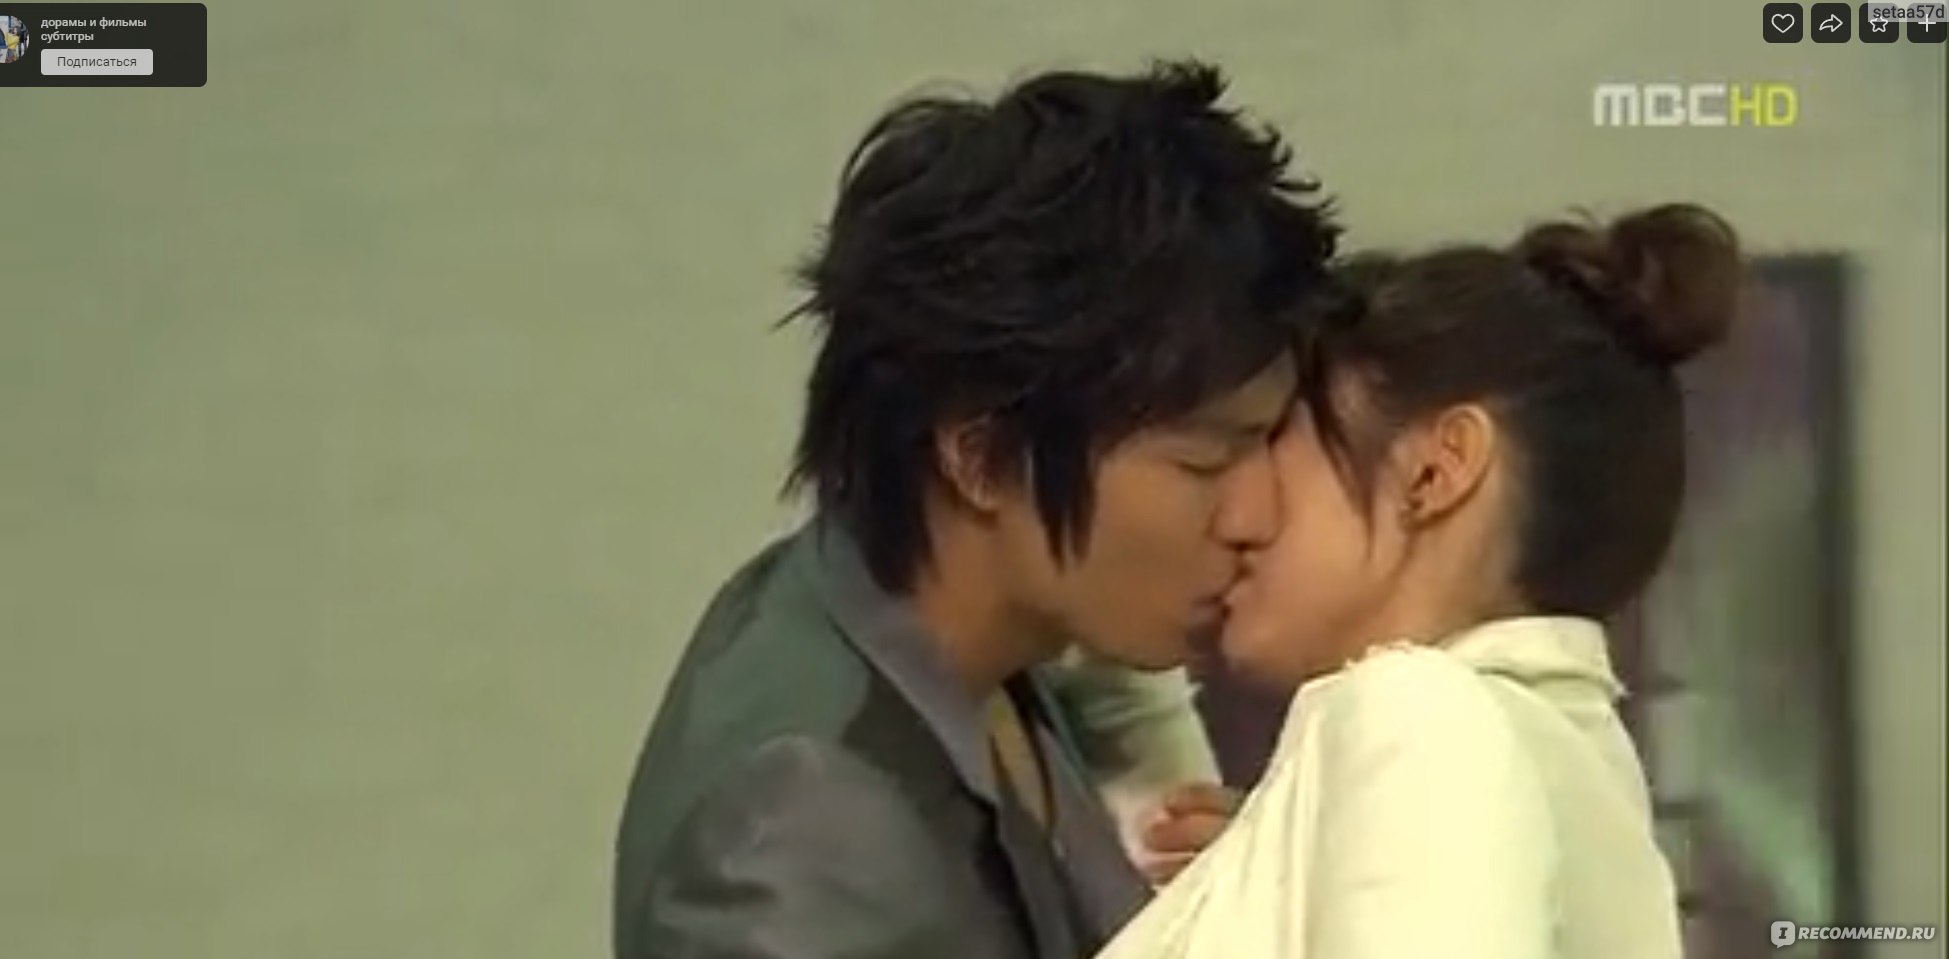 Мафия влюбляется в девушку. Кореан драма поцелуй. Первый поцелуй дорама Корея.